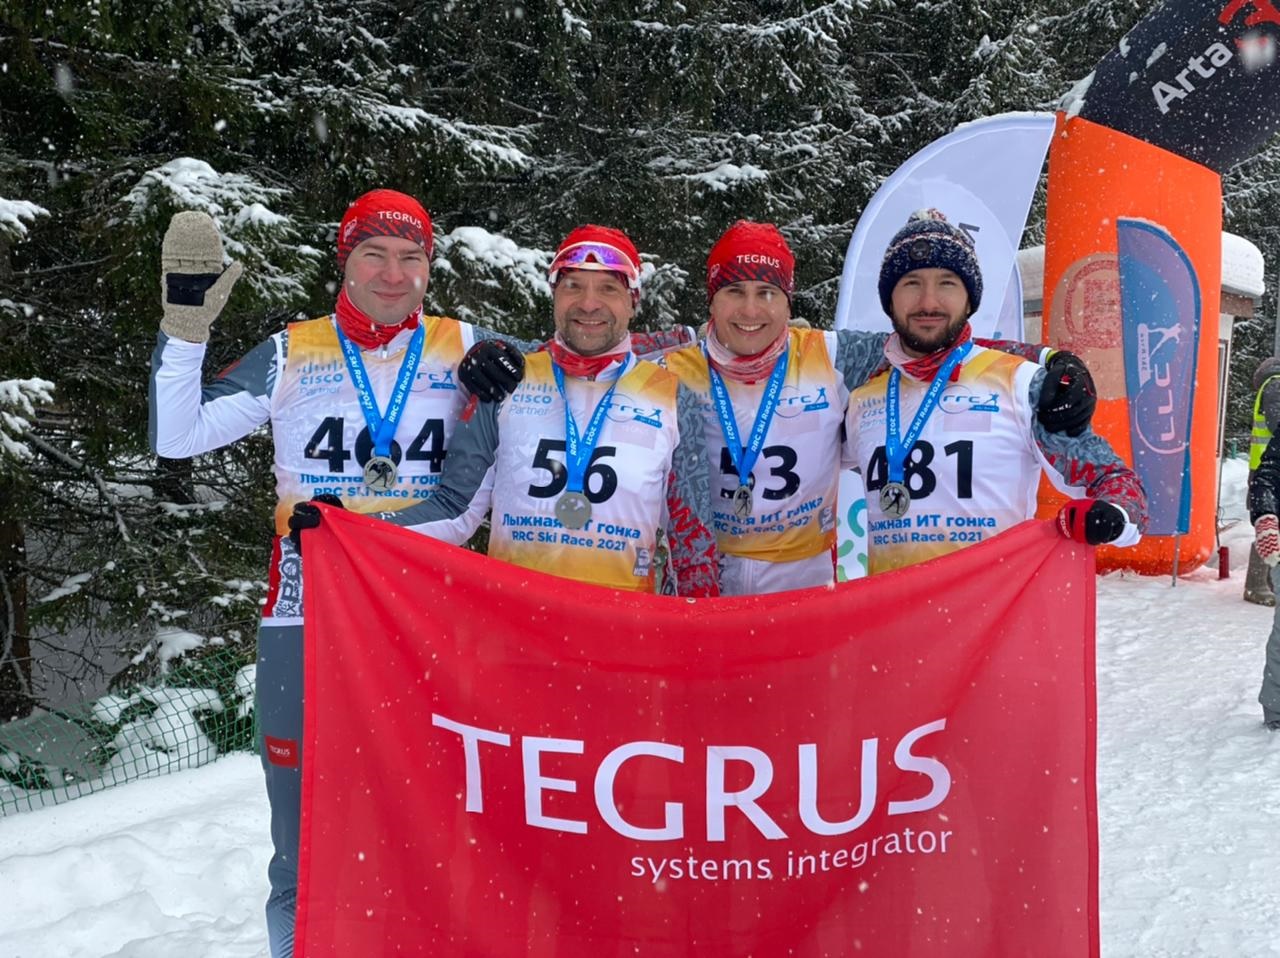 Успехи коллег из TEGRUS на лыжной гонке RRC Ski Race 2021